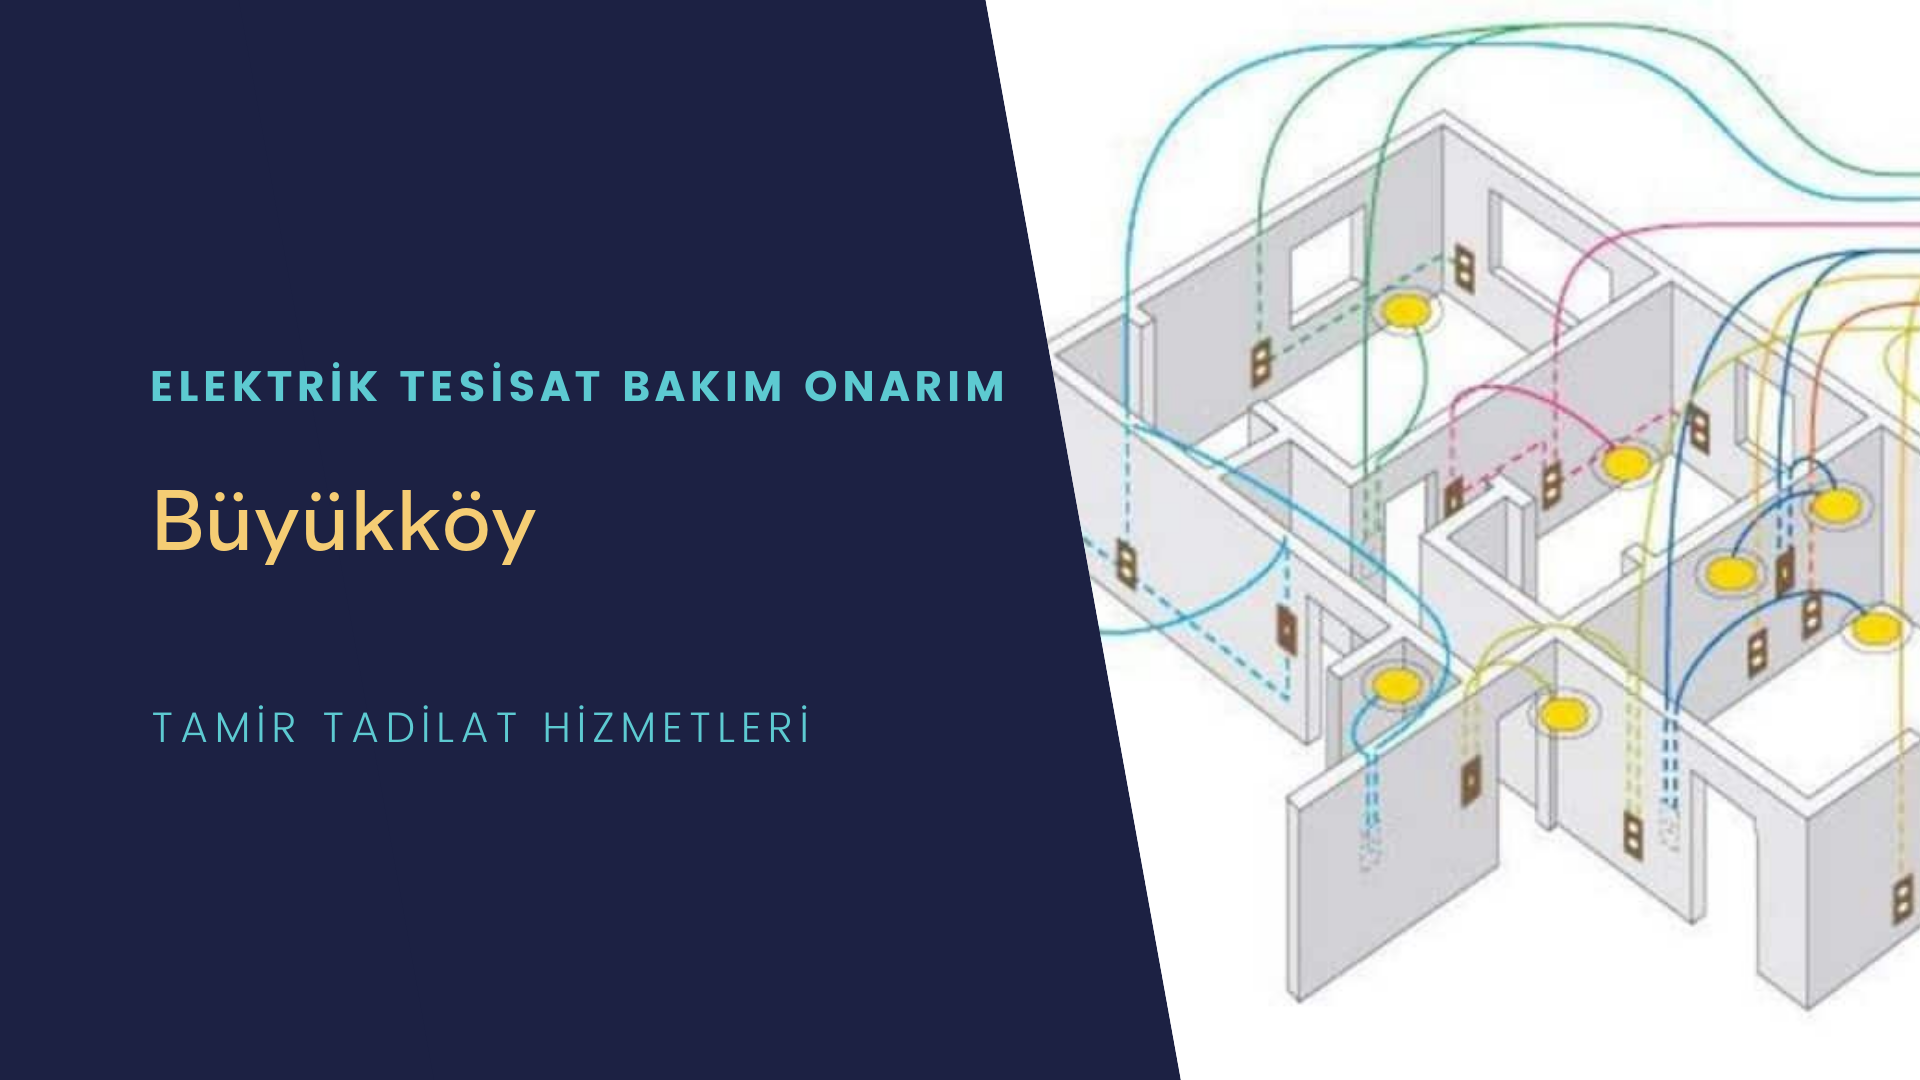 Büyükköy'de elektrik tesisatı ustalarımı arıyorsunuz doğru adrestenizi Büyükköy elektrik tesisatı ustalarımız 7/24 sizlere hizmet vermekten mutluluk duyar.